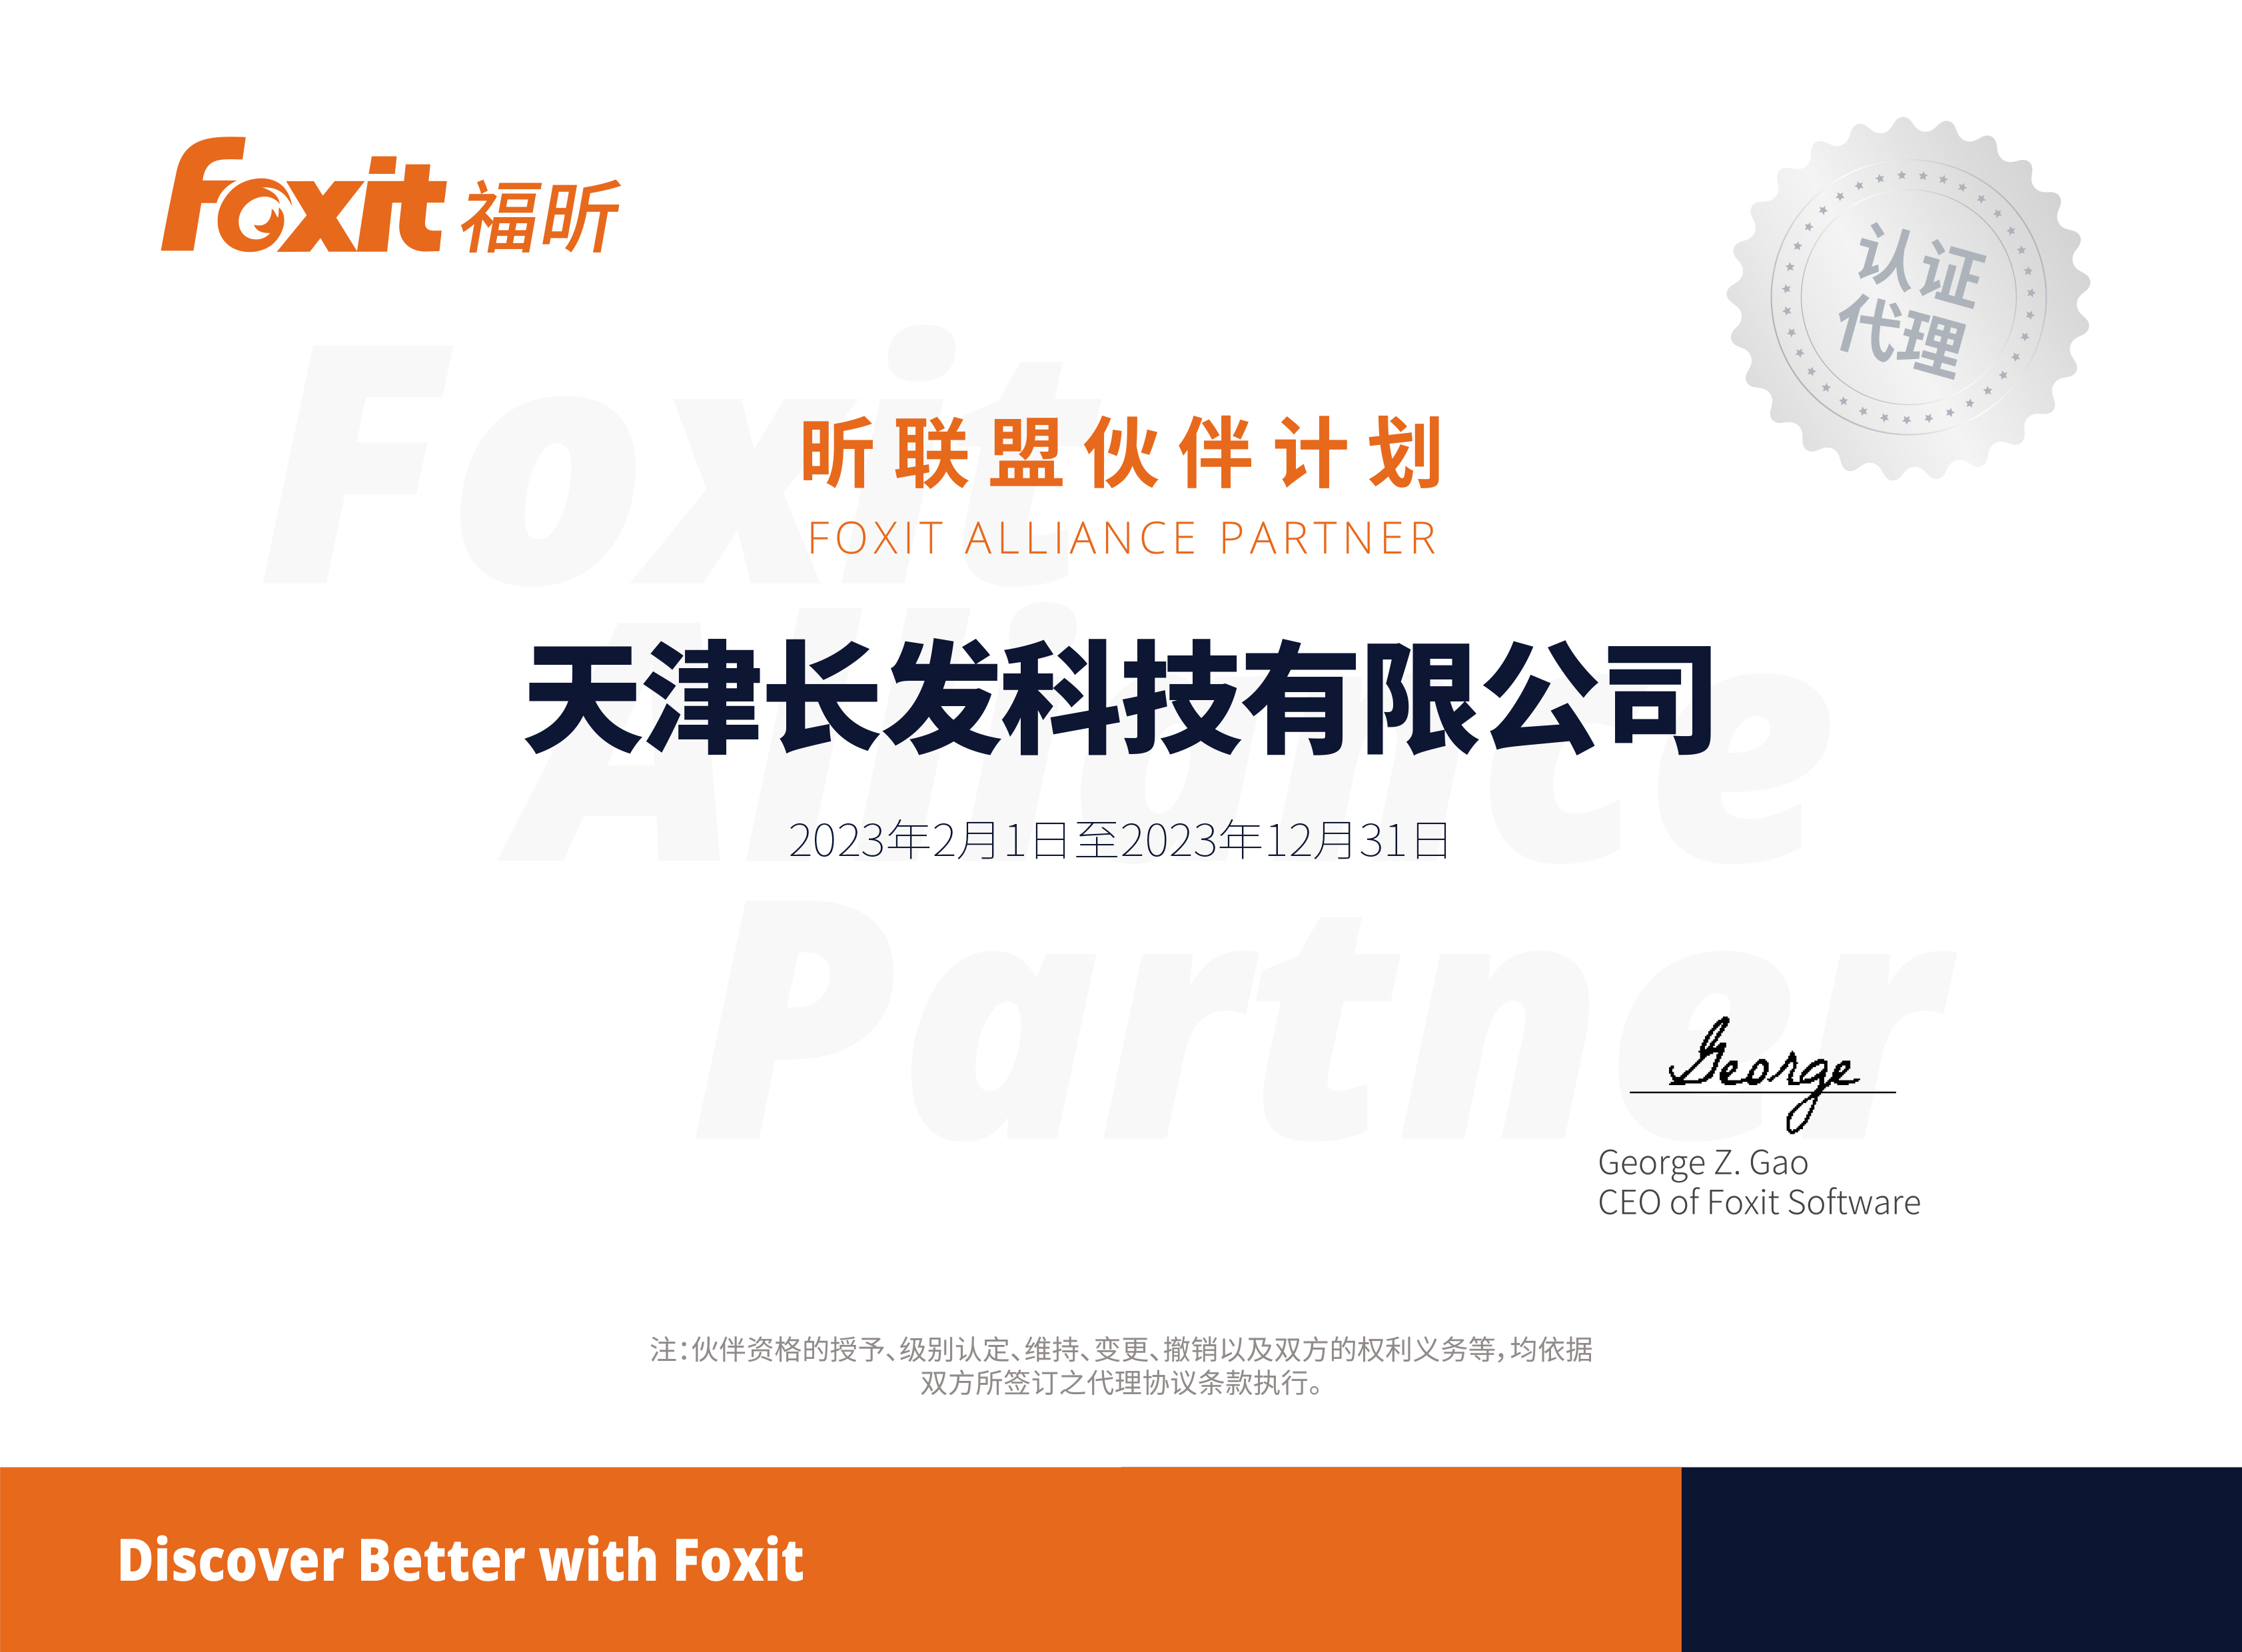 加入“昕联盟伙伴计划”成为 Foxit 认证代理商